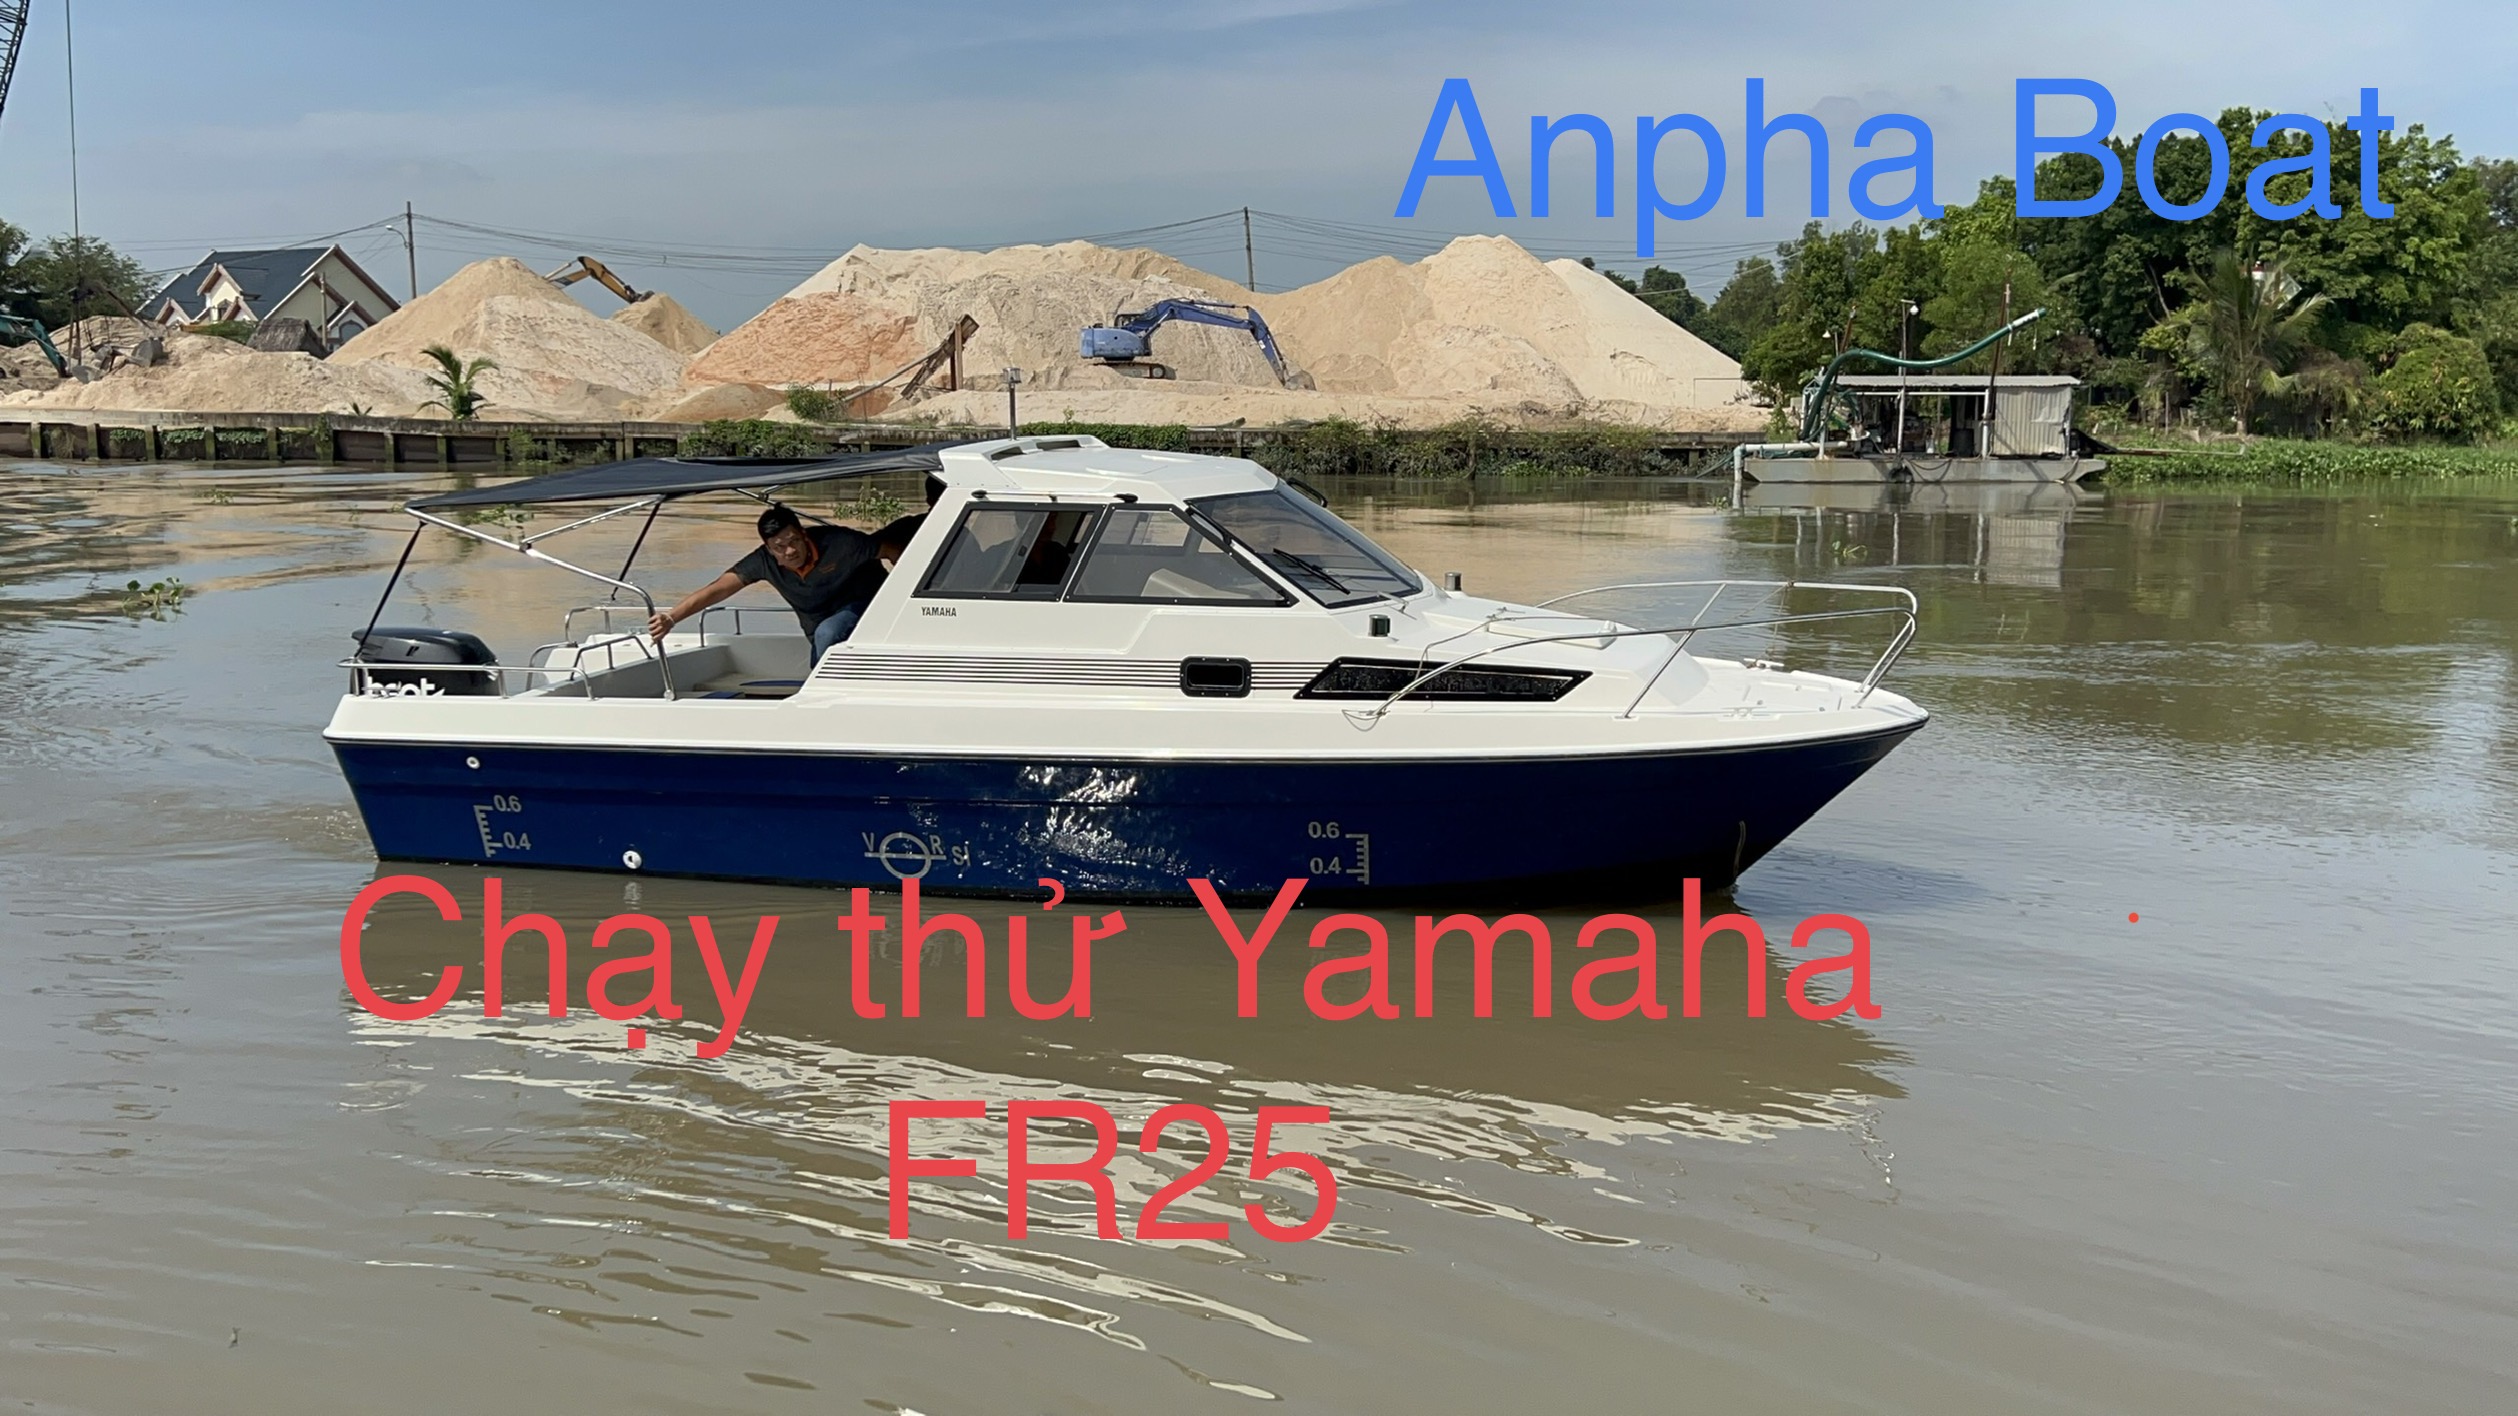 AC6465D5 A213 450C B990 F1F595061674 Du thuyền Yamaha FR25 sắp về bãi Anpha Boat